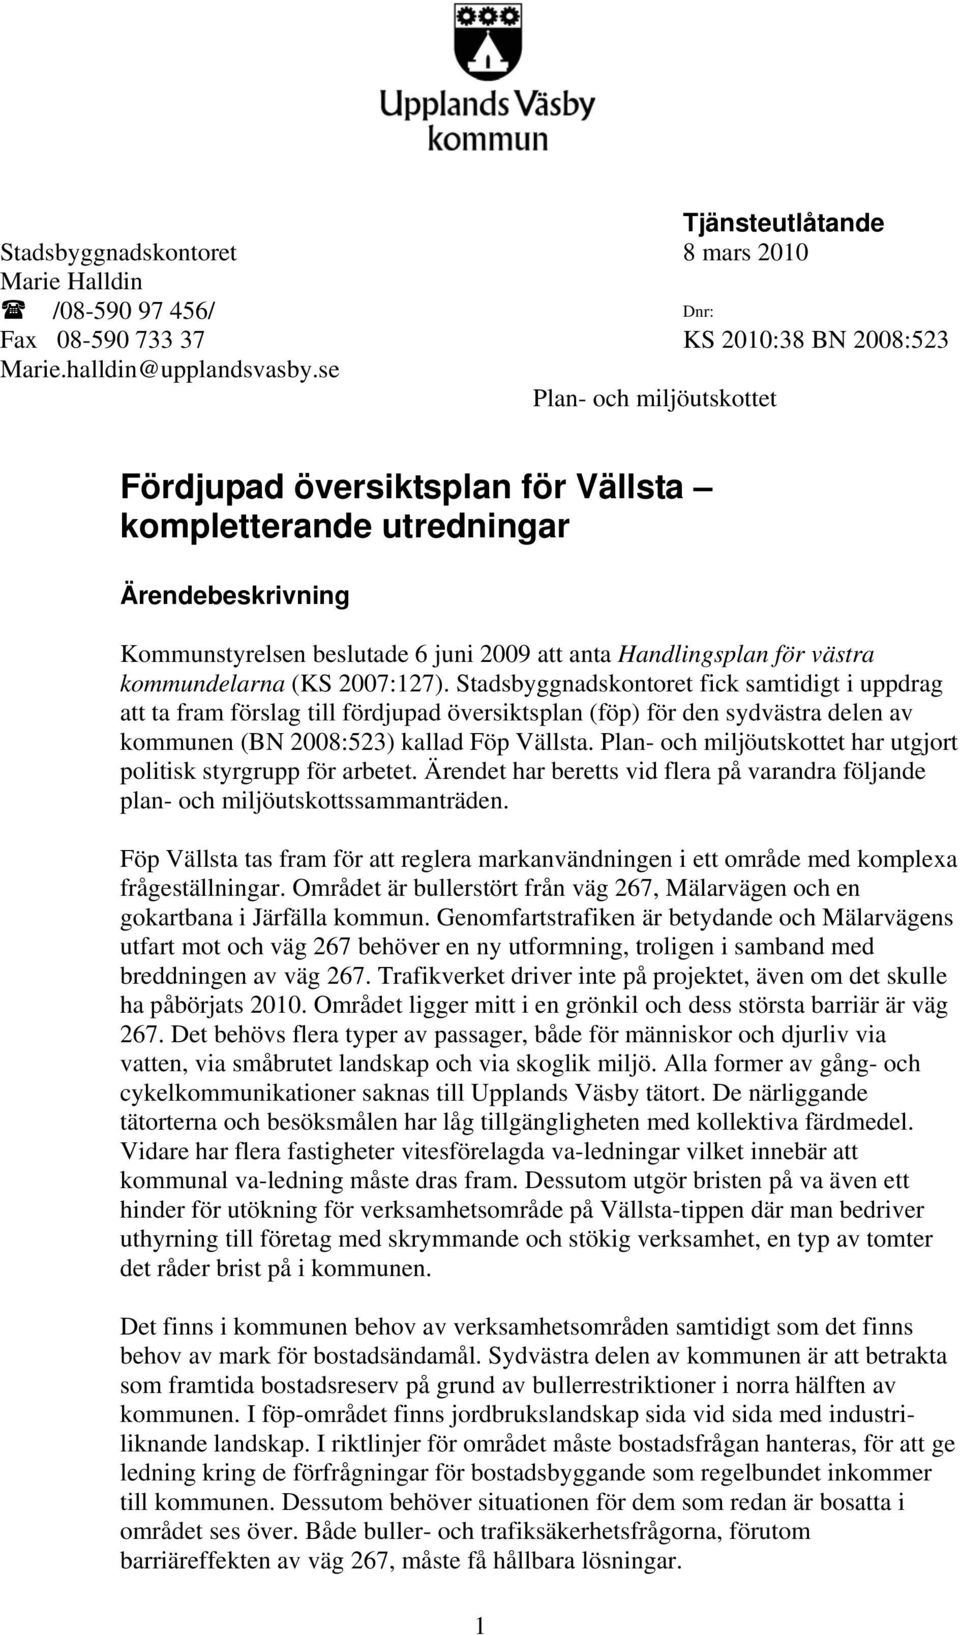 2007:127). Stadsbyggnadskontoret fick samtidigt i uppdrag att ta fram förslag till fördjupad översiktsplan (föp) för den sydvästra delen av kommunen (BN 2008:523) kallad Föp Vällsta.